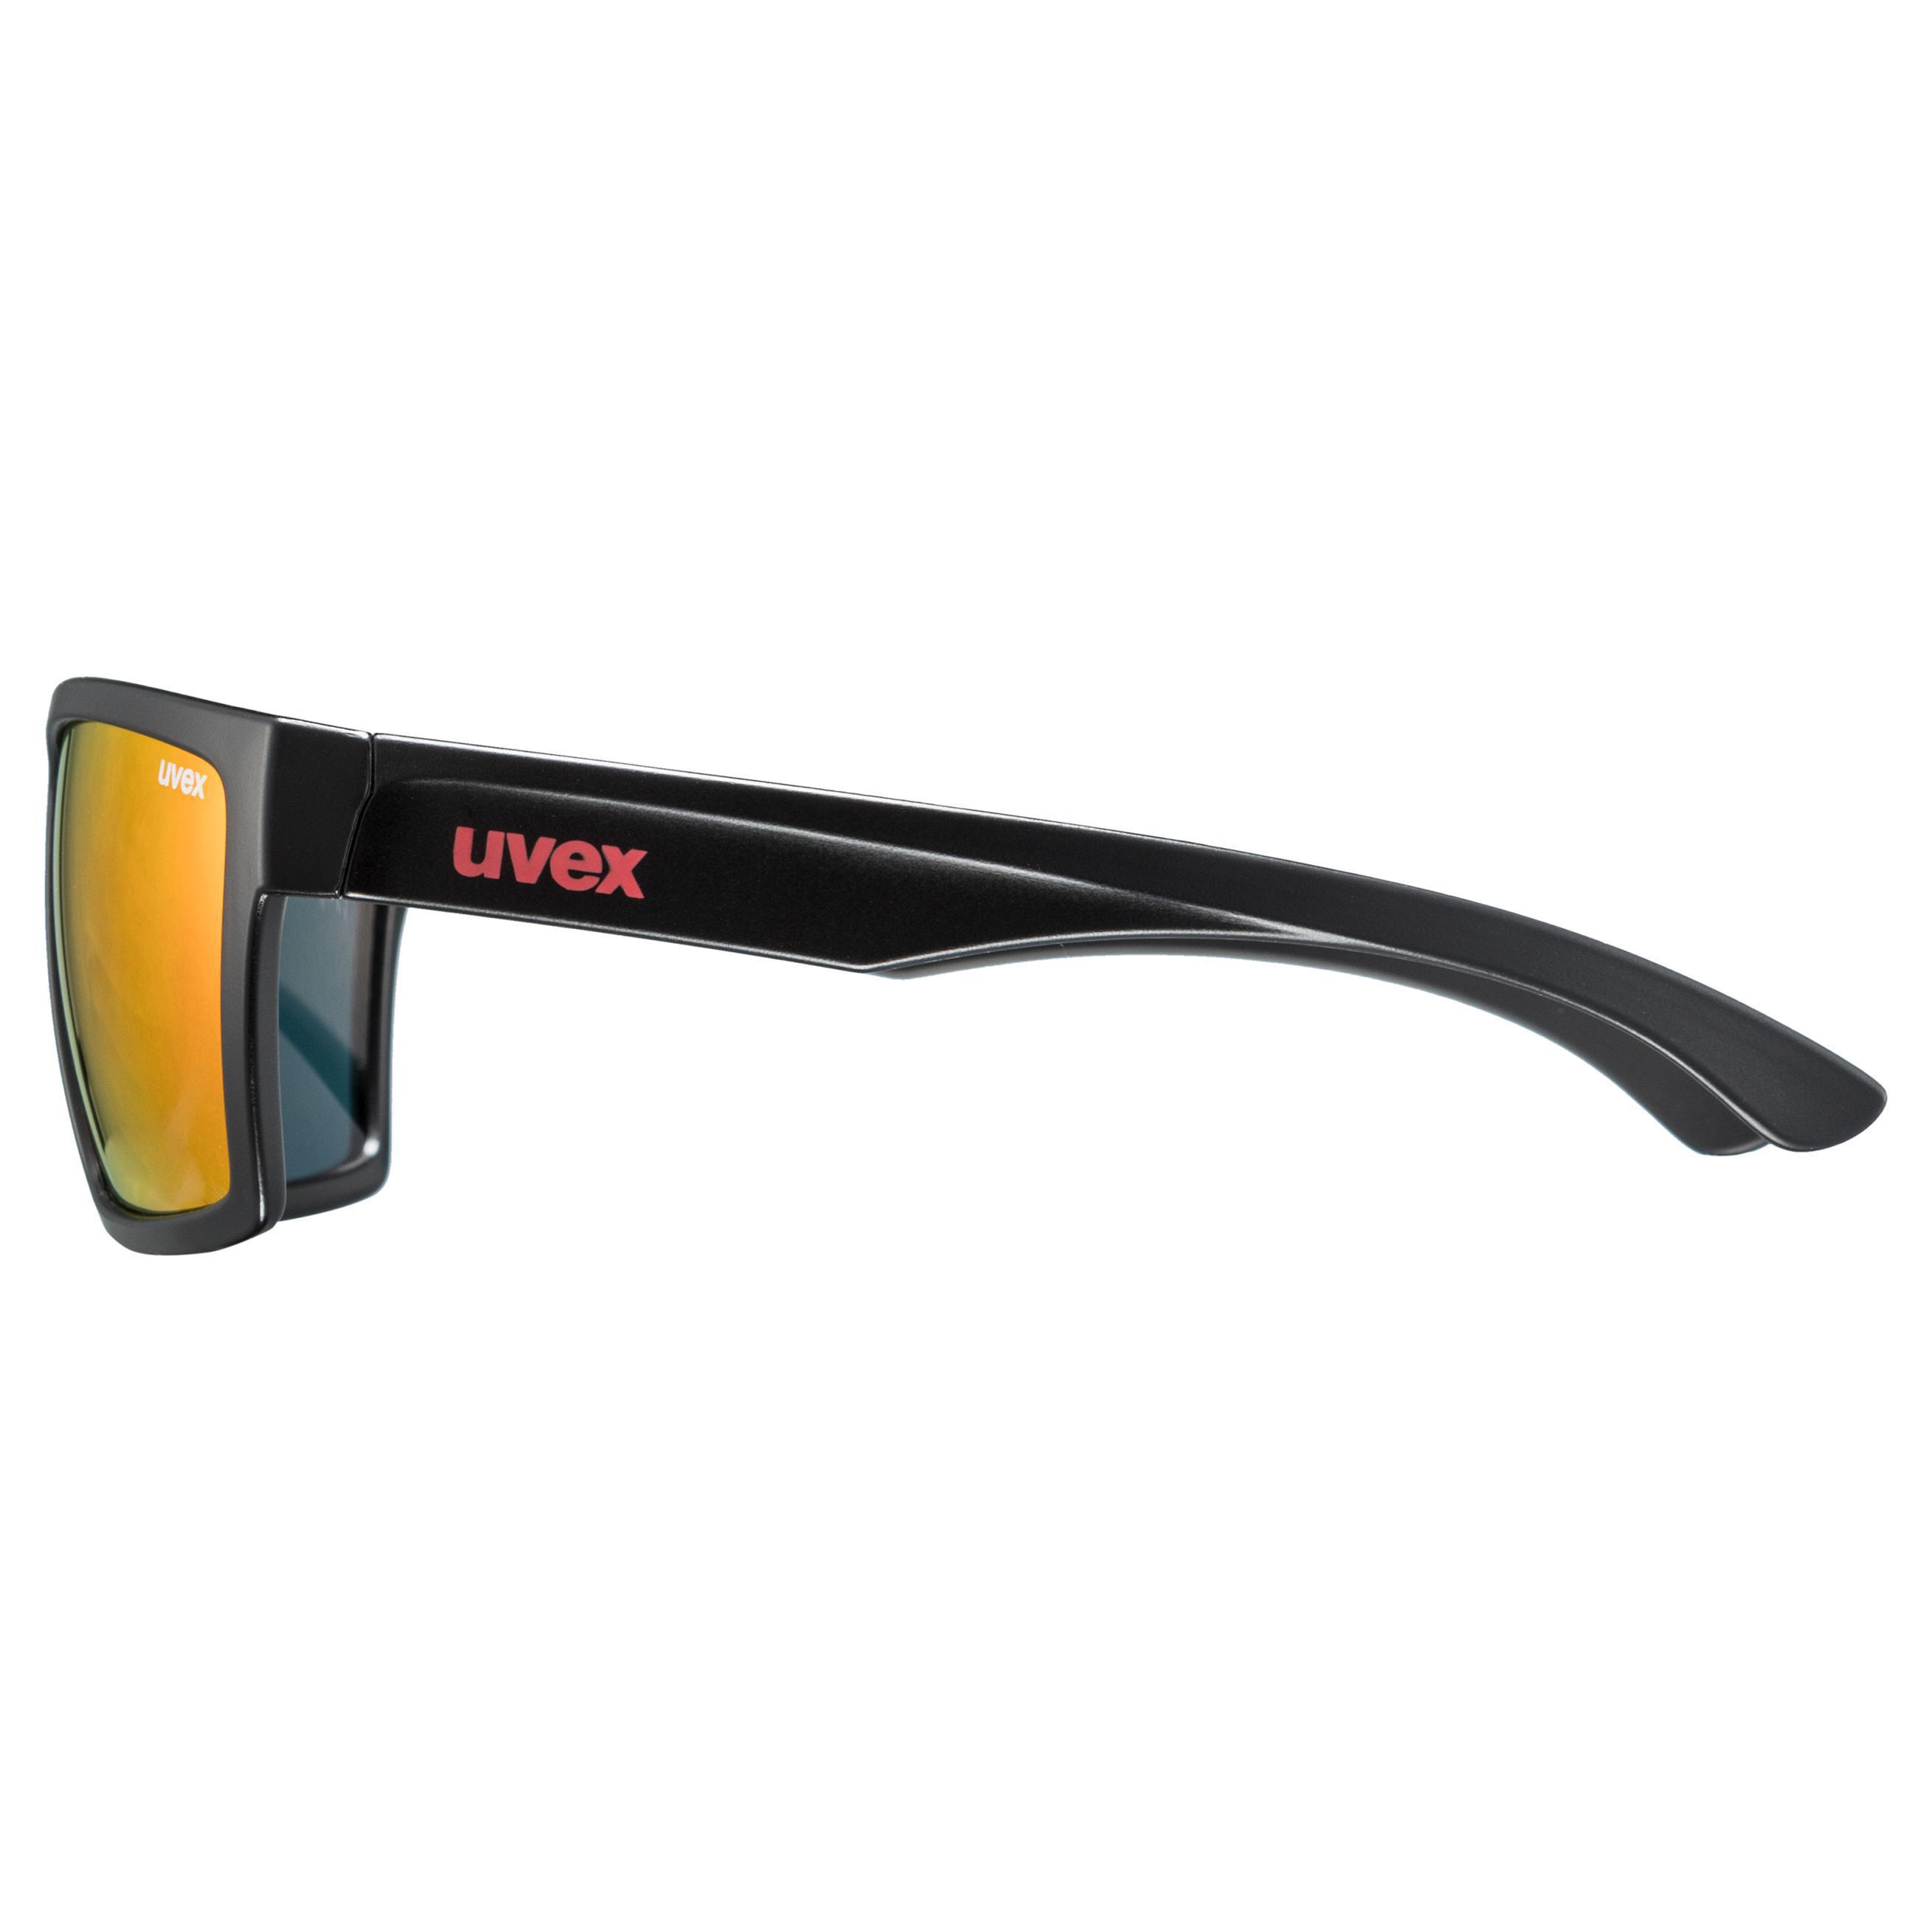 uvex lgl 29 Sportbrille Sonnenbrille Fahrradbrille UV-Schutz Brille S53094722 